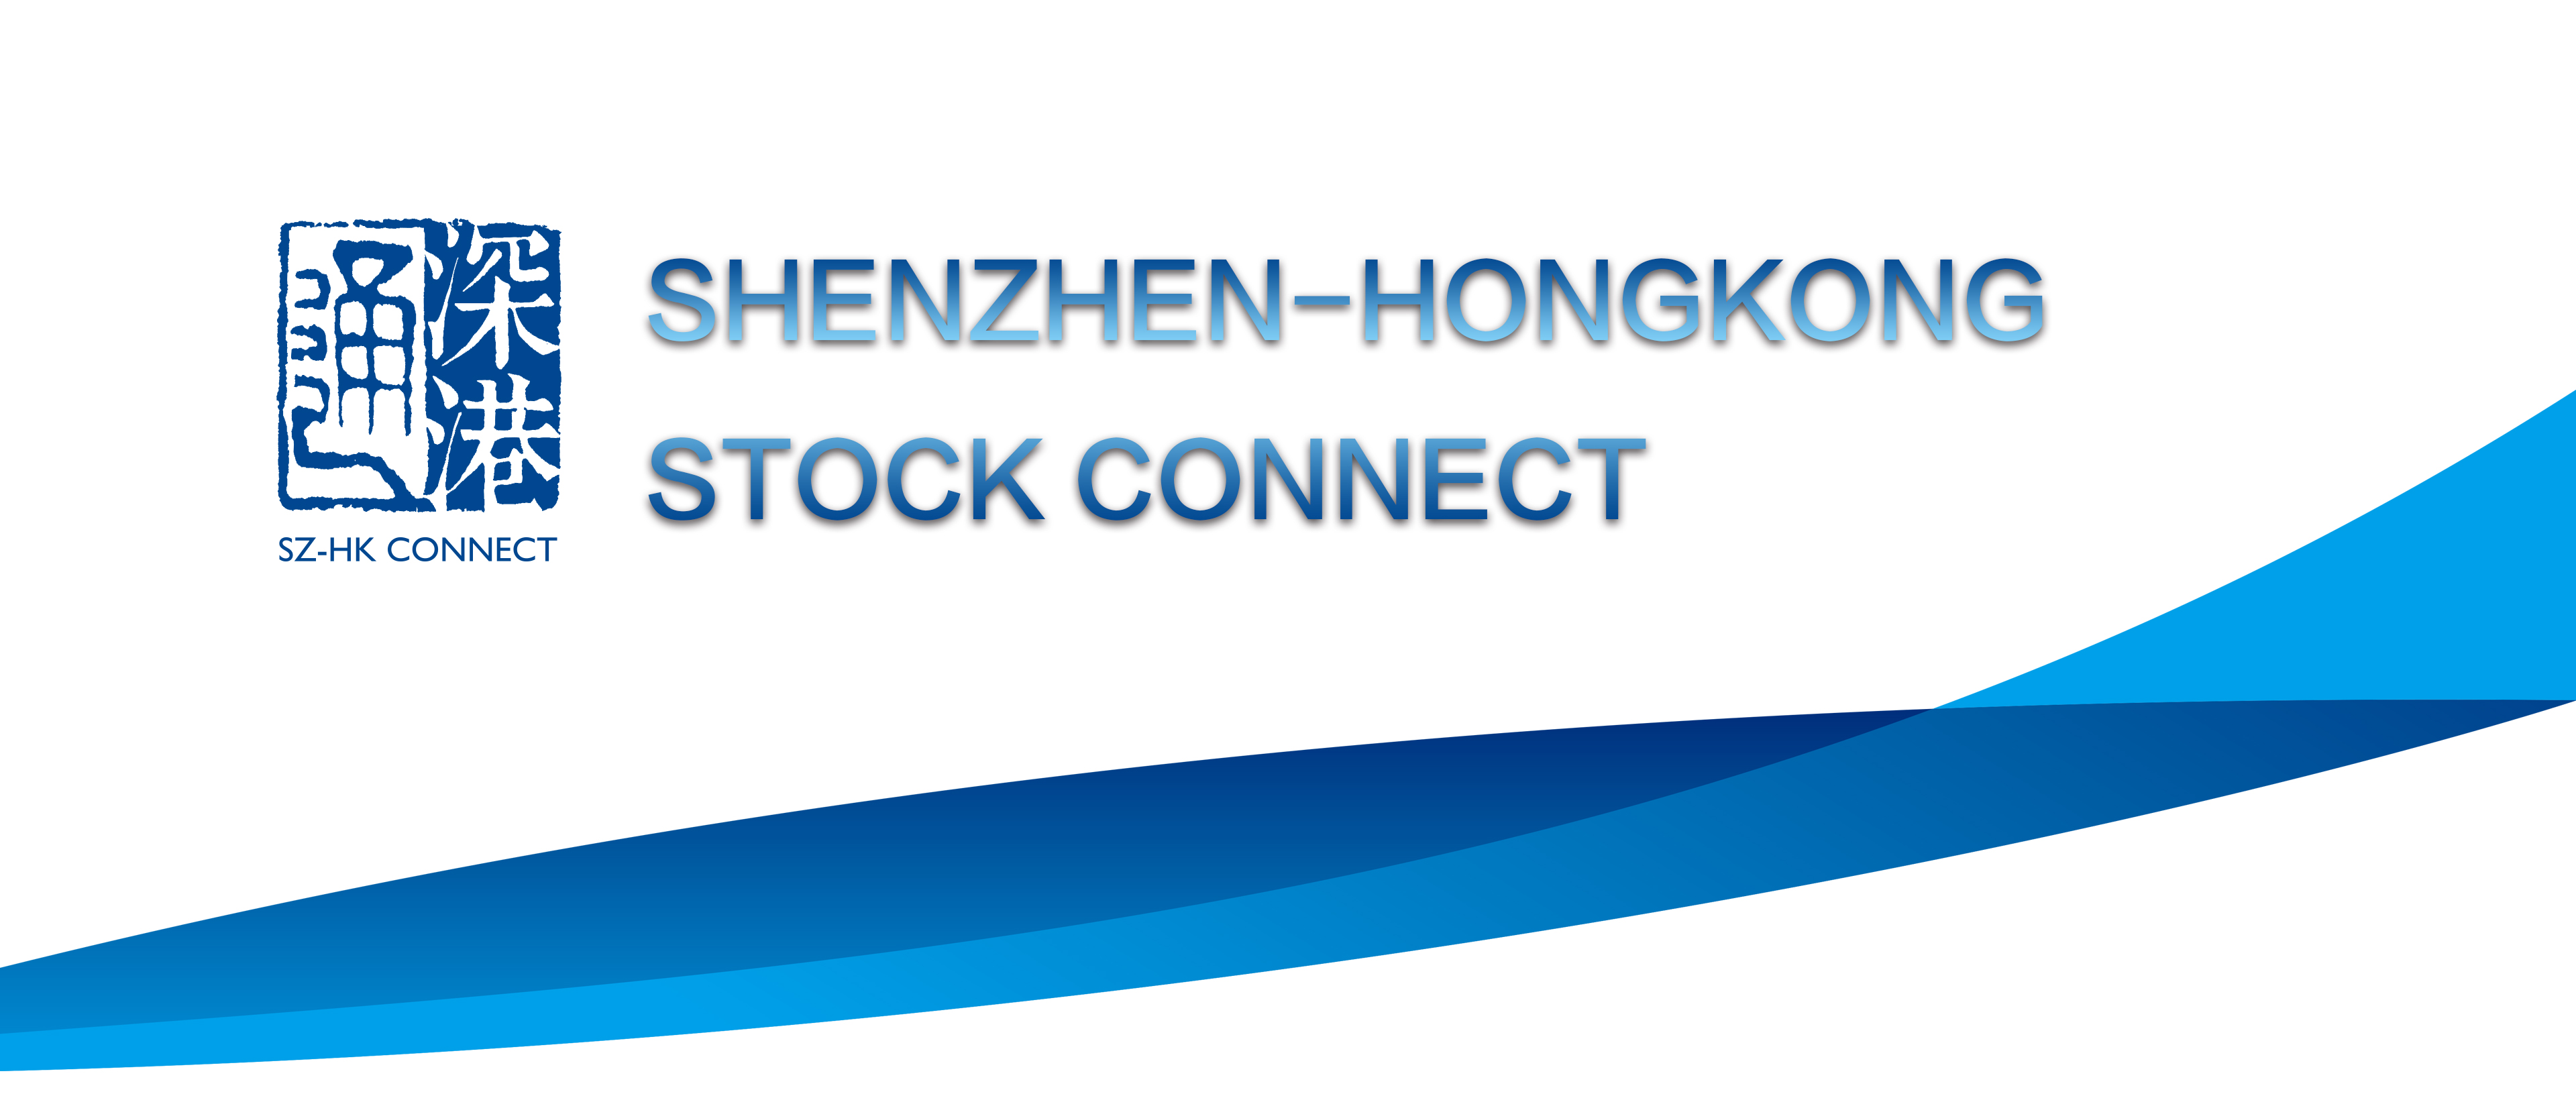 Index shenzhen Shenzhen index: